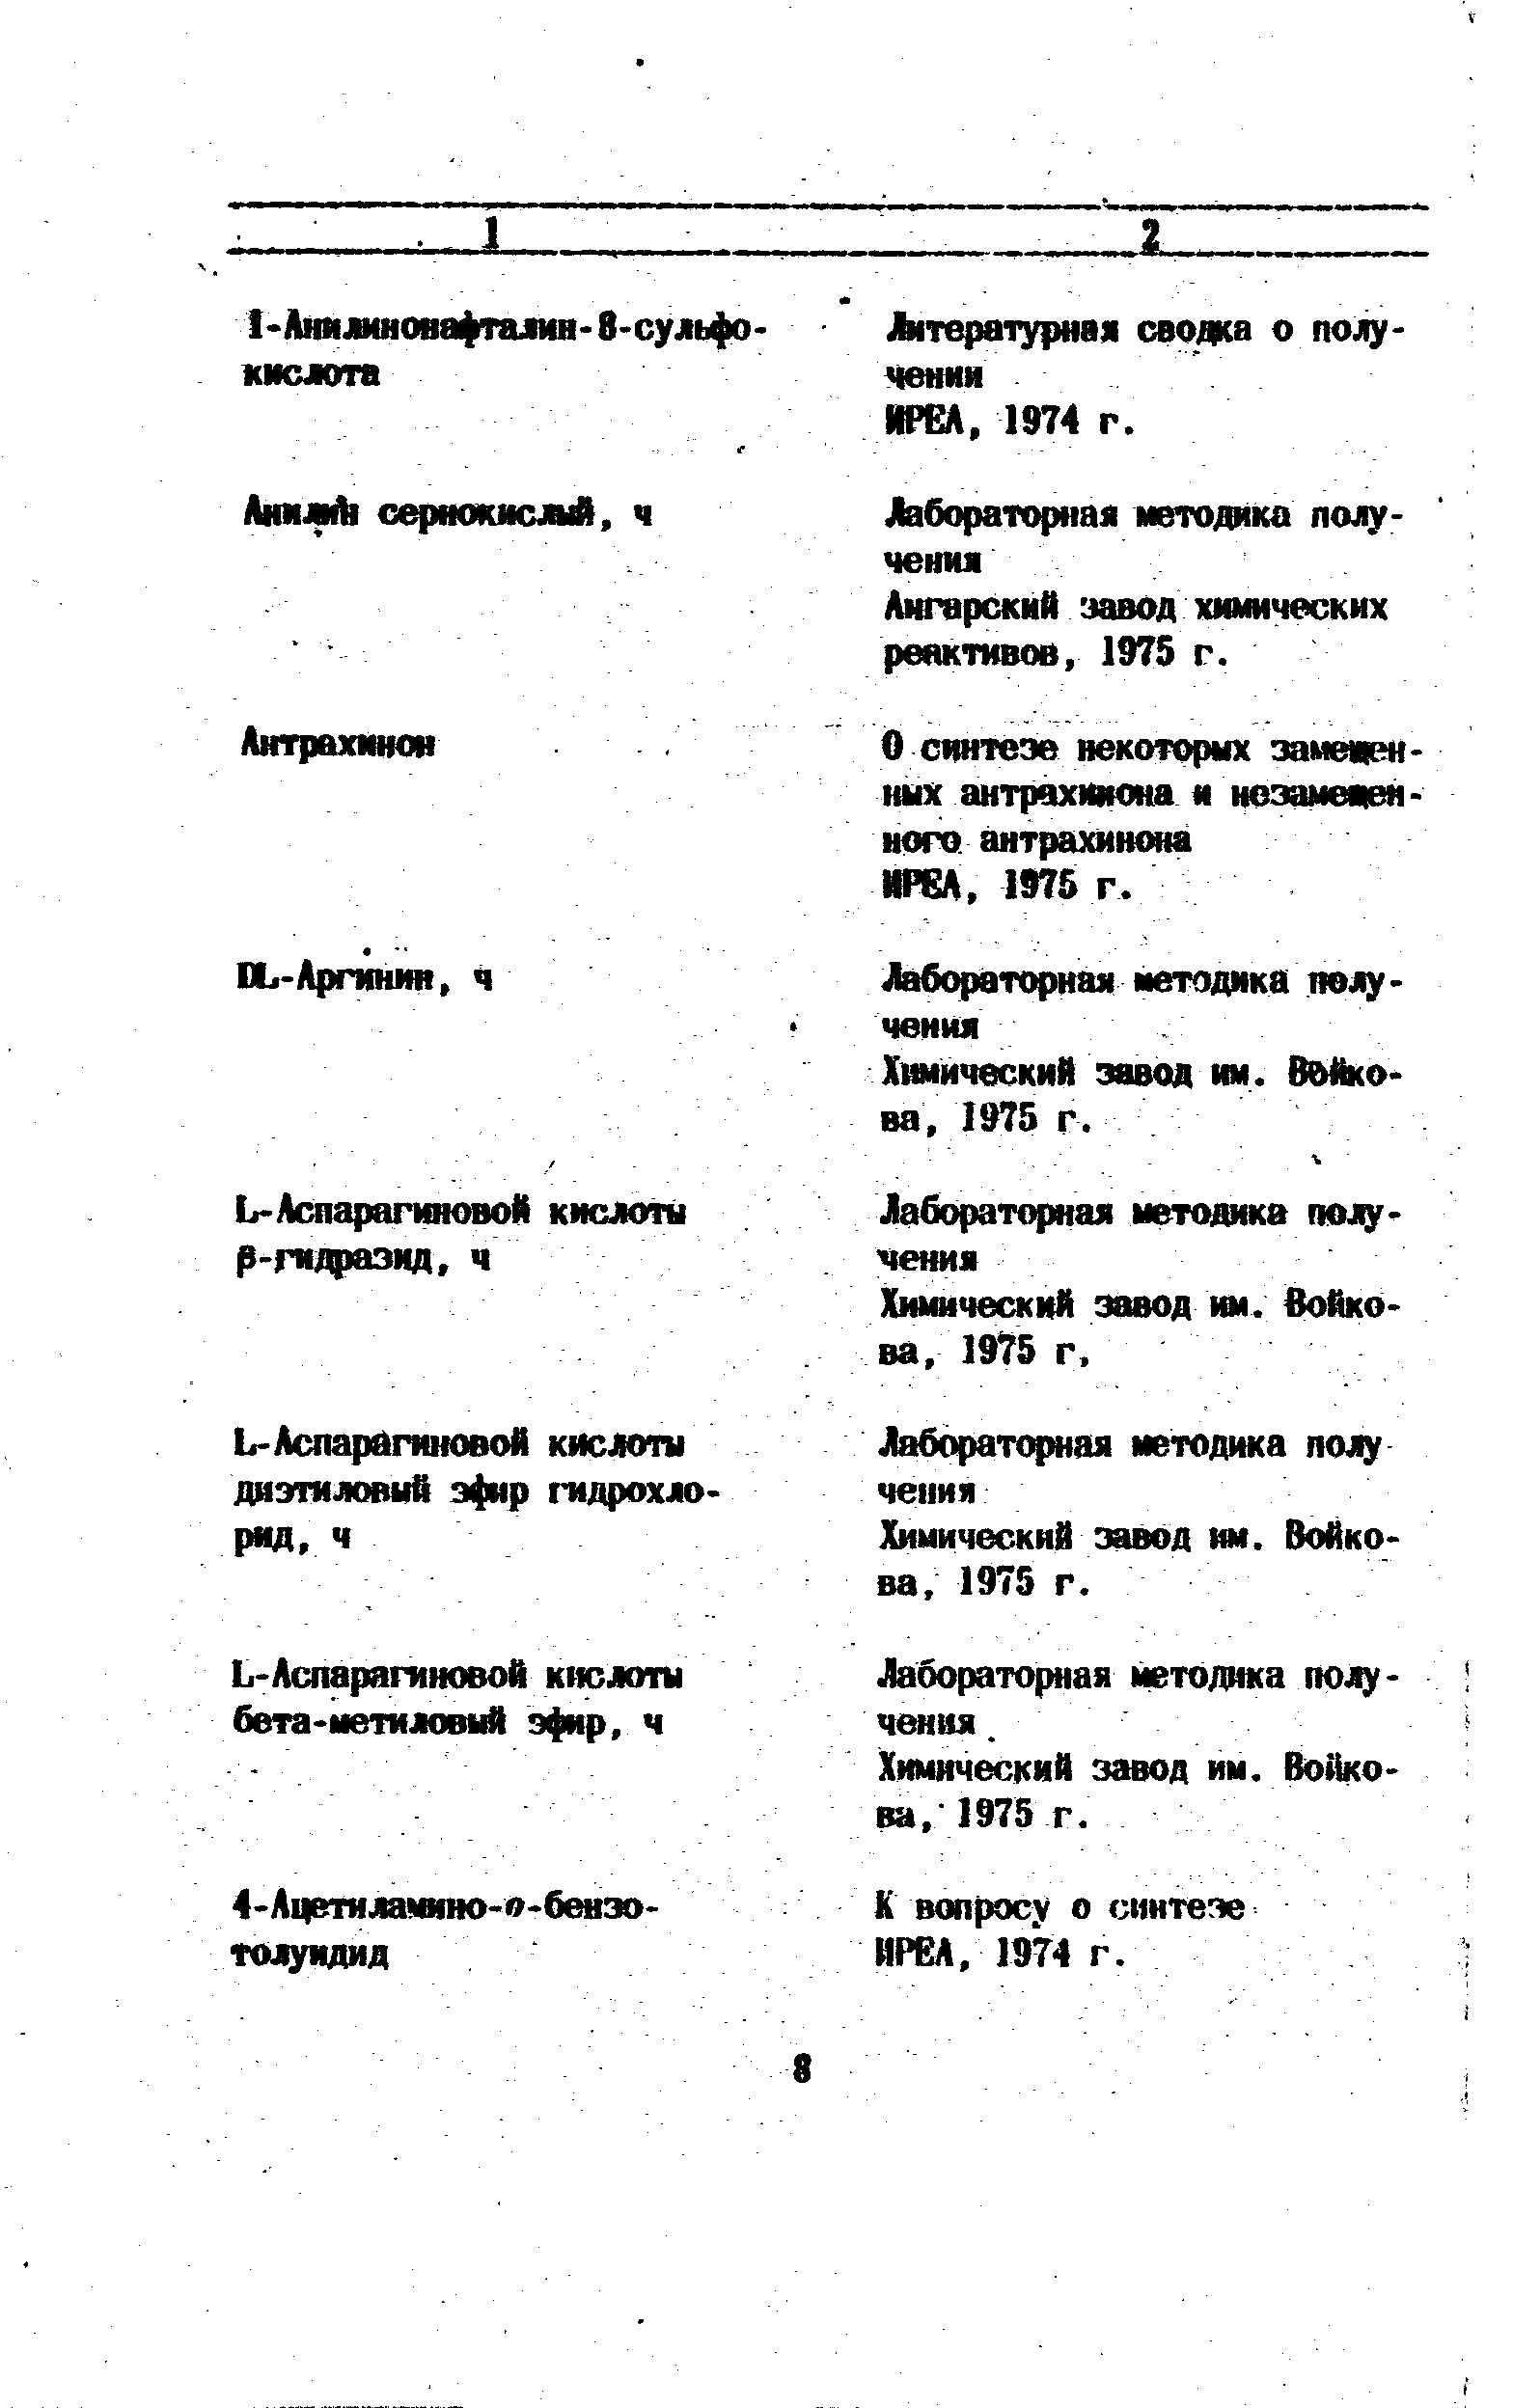 Химический завод ши. Войкова, 1975 г.